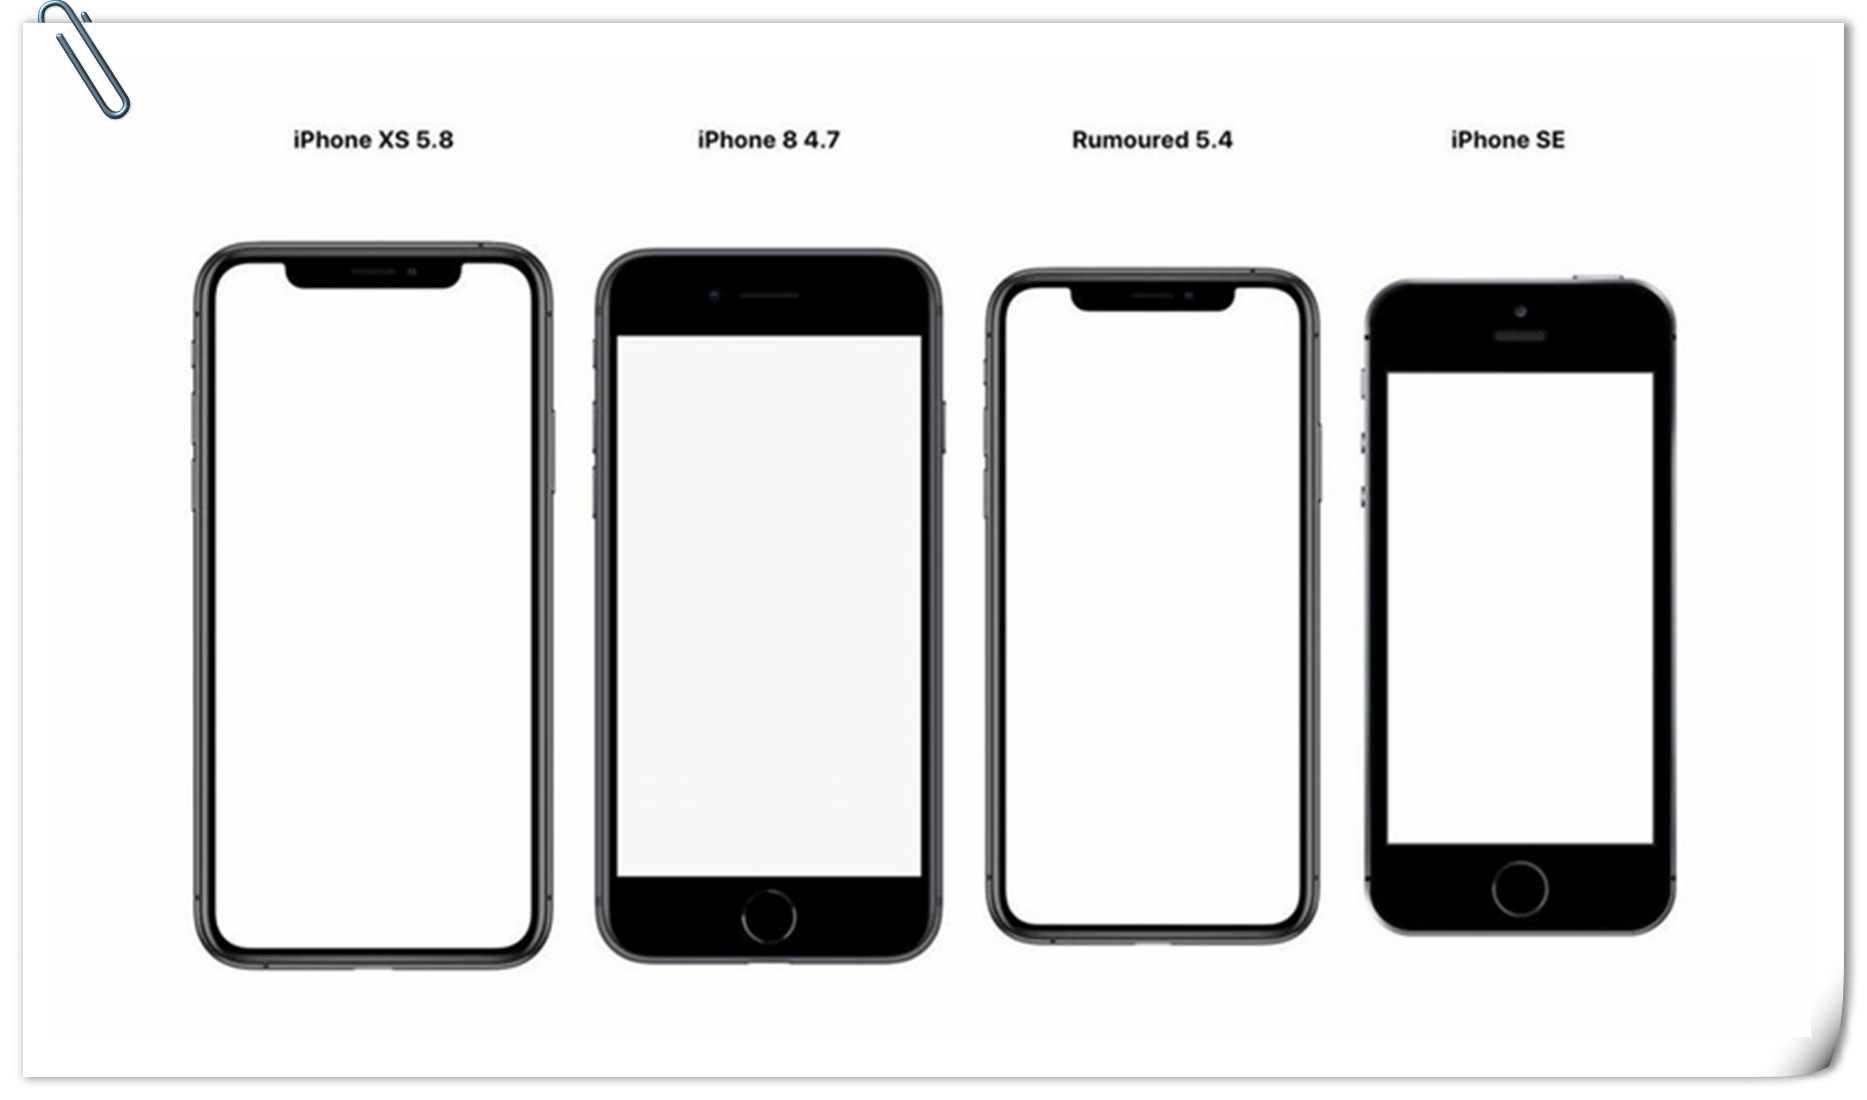 原创iphone12外观设计亮相:超窄边框 小刘海,依旧是最美苹果手机